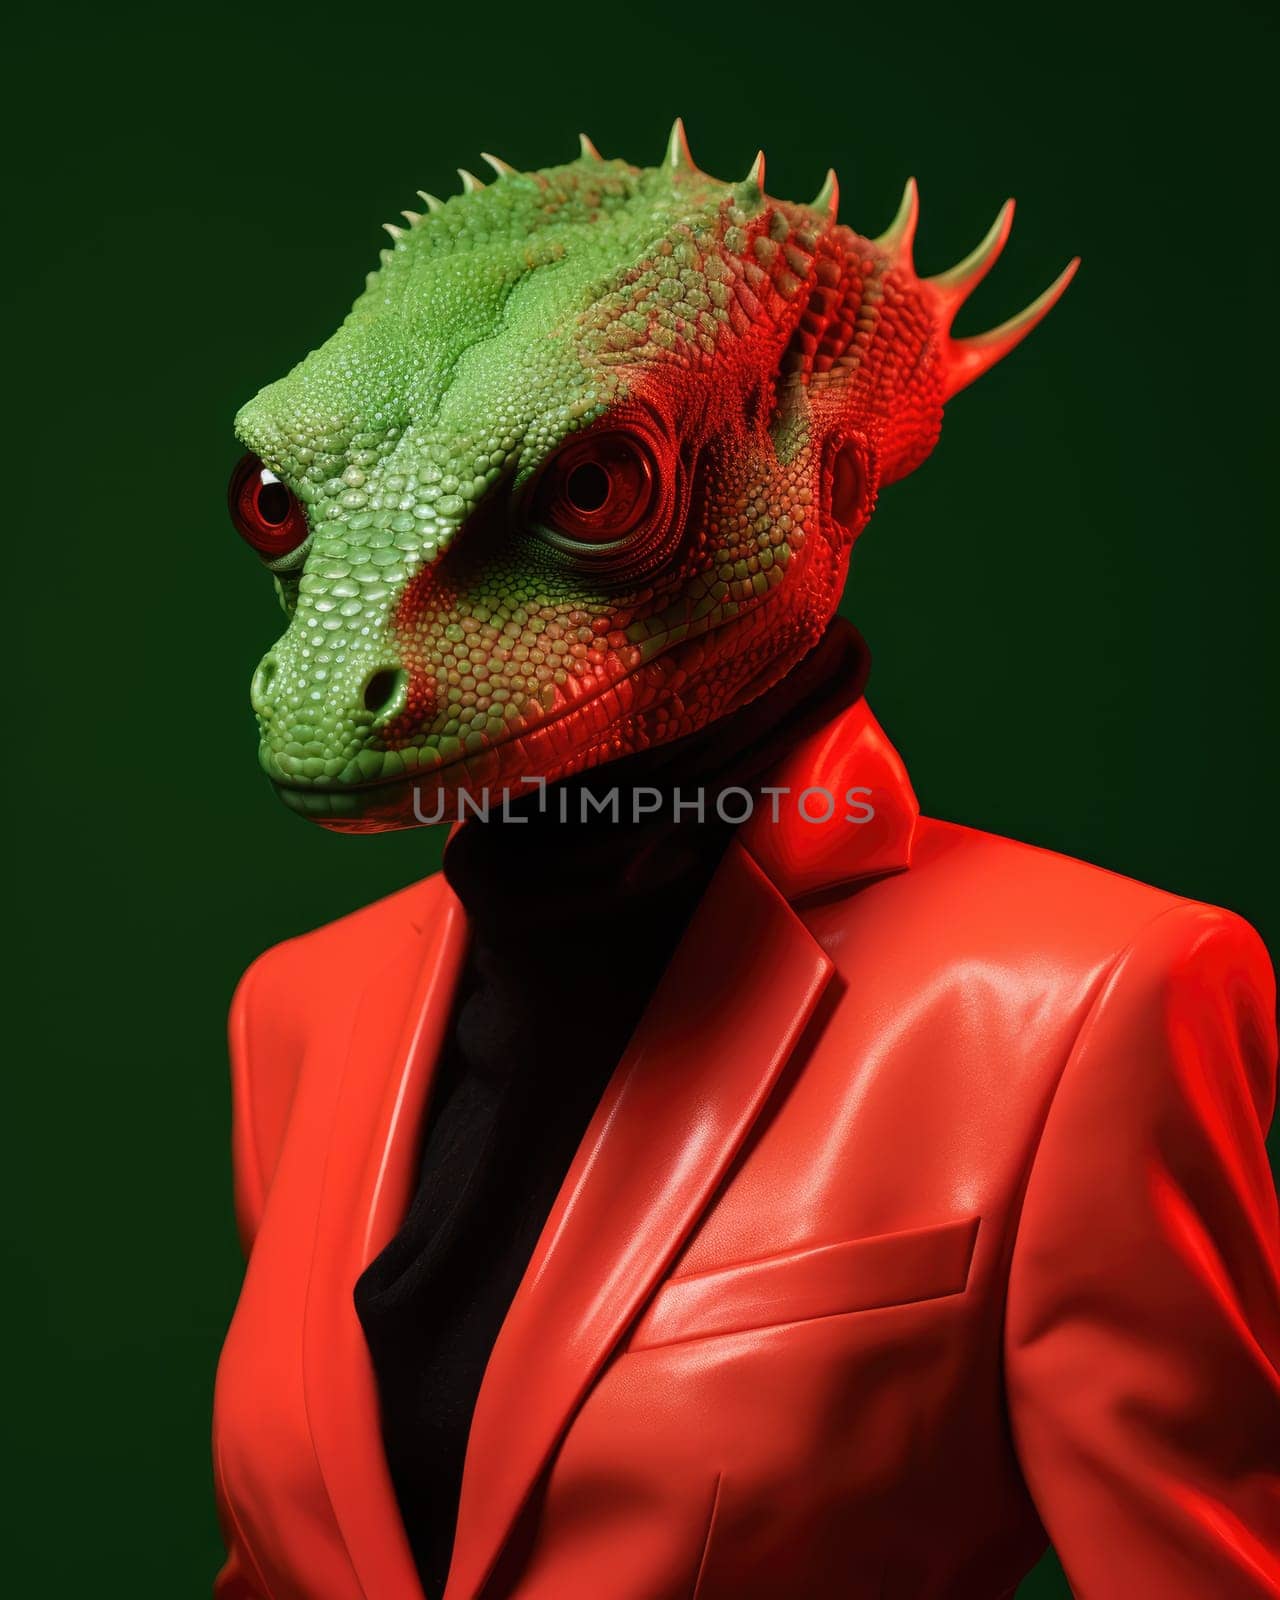 Reptiloid humanoid. Portrait of a lizard woman by palinchak